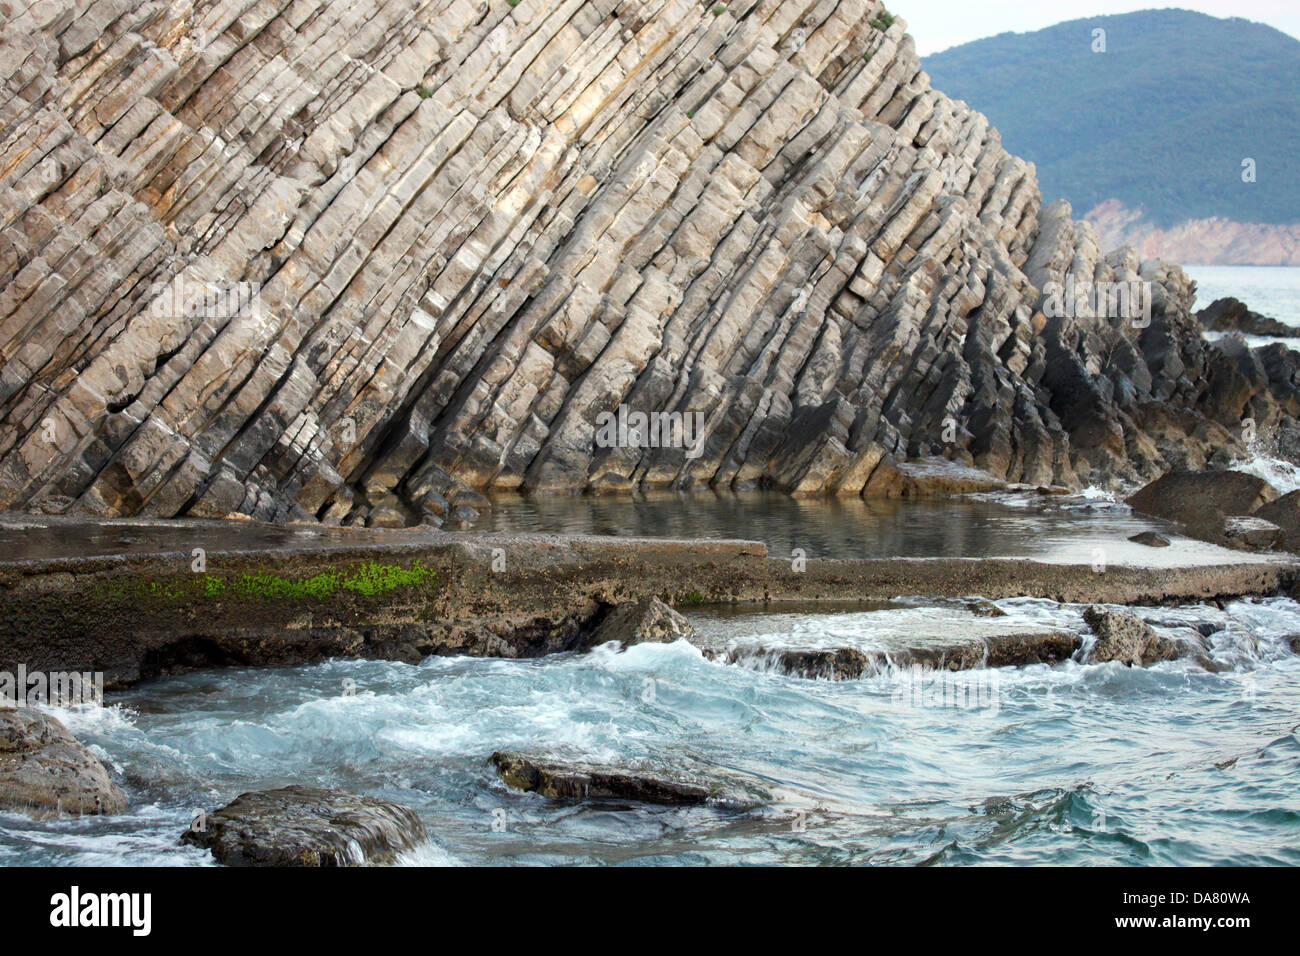 Questo è un dettaglio colpo di qualche vecchia scogliera sulla costa del mare in Montenegro, come nice background. Foto Stock